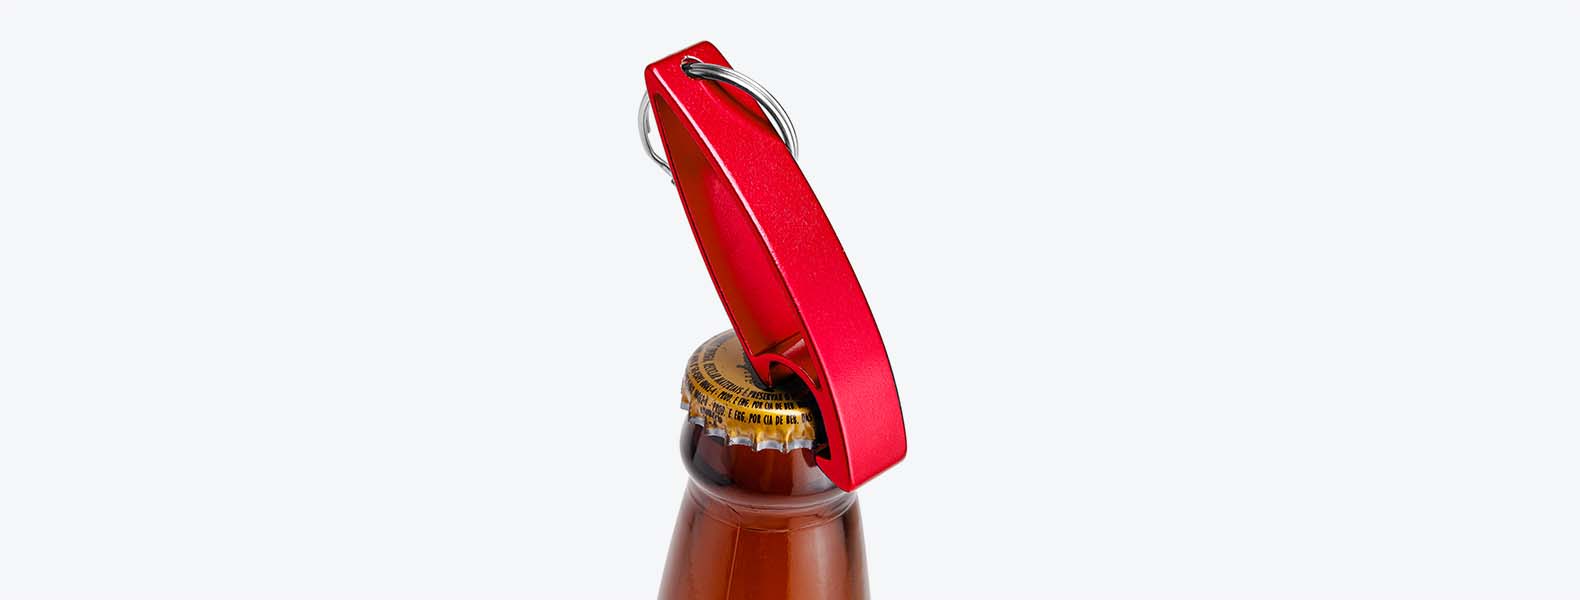 Chaveiro abridor de garrafas em alumínio vermelho com argola para fixação.